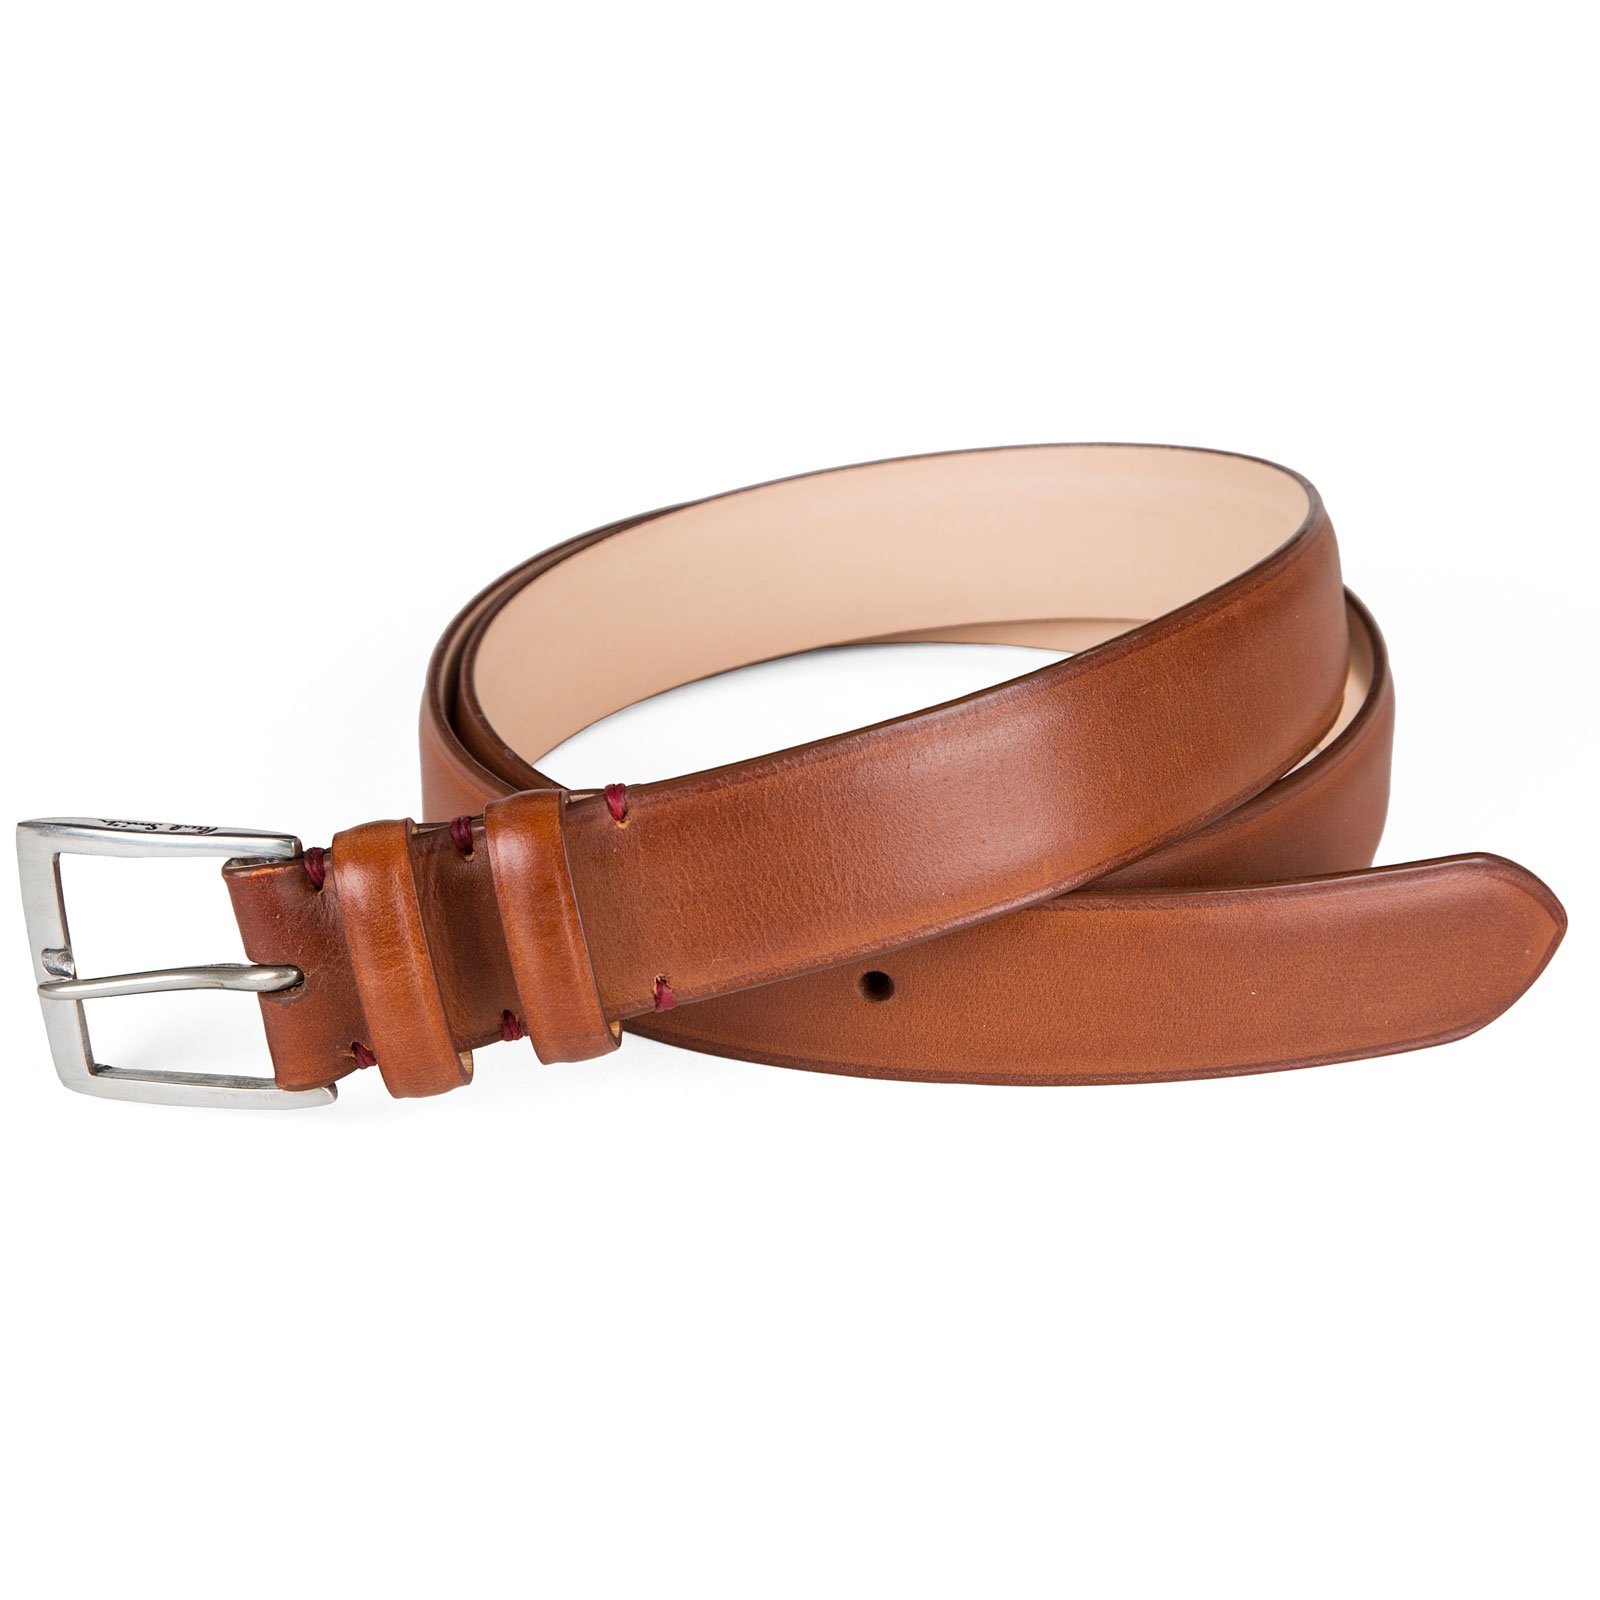 Tan Leather Dress Belt - Accessories-Belts : Fifth Avenue Menswear ...